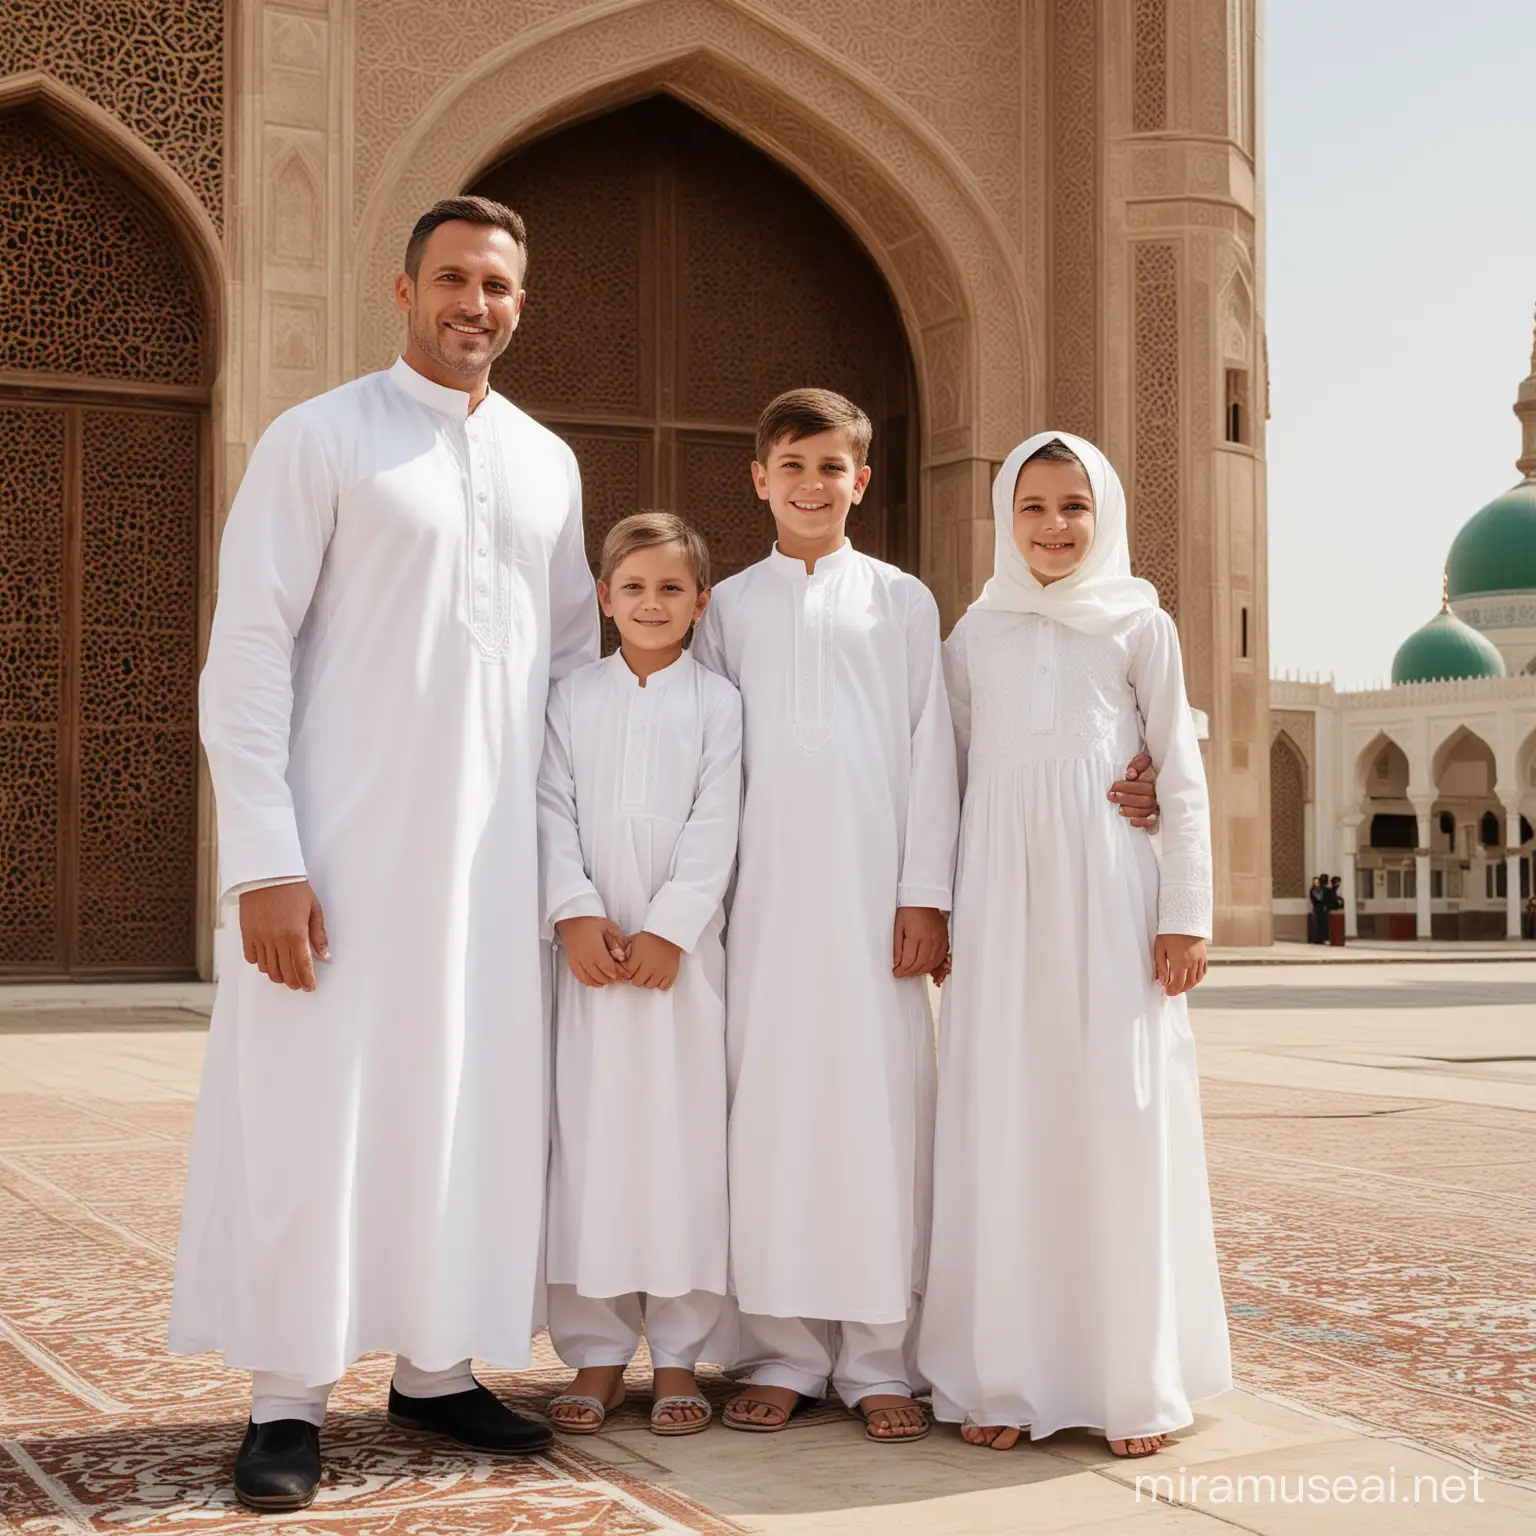 Foto keluarga  terdiri dari 1 orang pria tampan usia 40.1 orang perempuan cantik usia 35.1 orang anak laki-laki tampan usia 11.1 orang anak perempuan usia 7 memakai baju gamis berwarna putih latar belakang mesjid 
